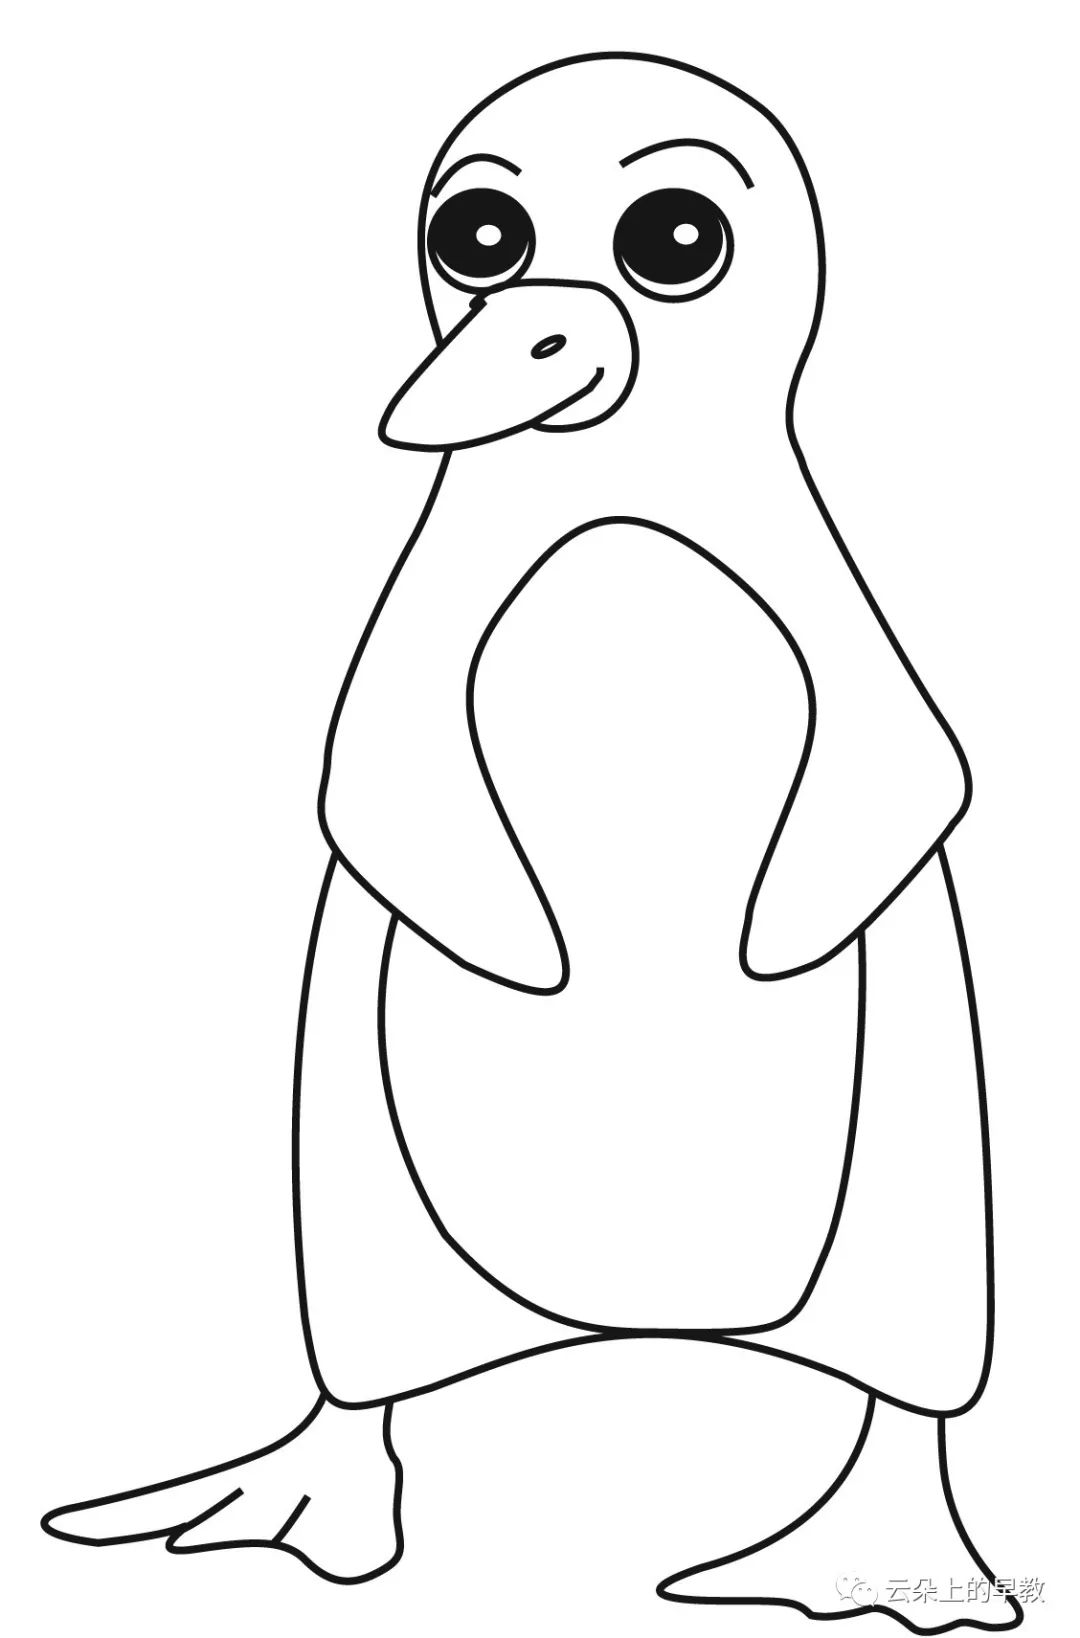 第4周主题小班苹果apple大班澳洲企鹅penguin